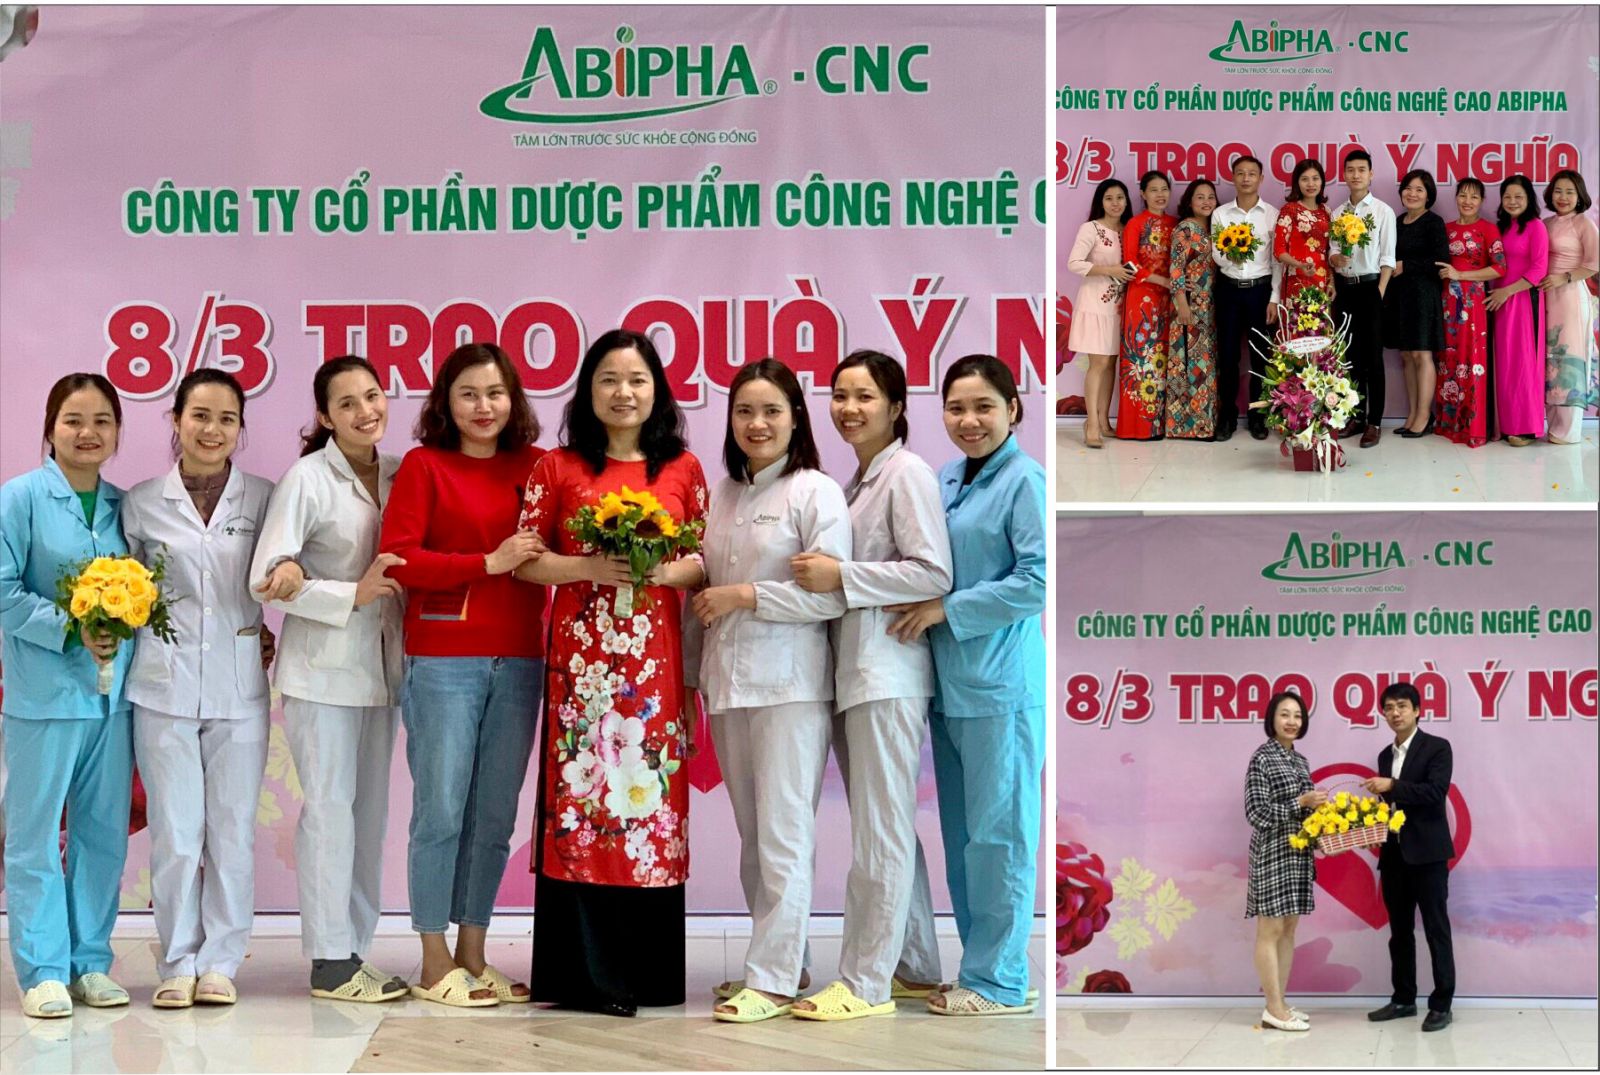 Công ty Cổ phần Dược phẩm quốc tế Abipha: Tổ chức nhiều hoạt động thiết thực chào mừng kỷ niệm Ngày Quốc tế Phụ nữ